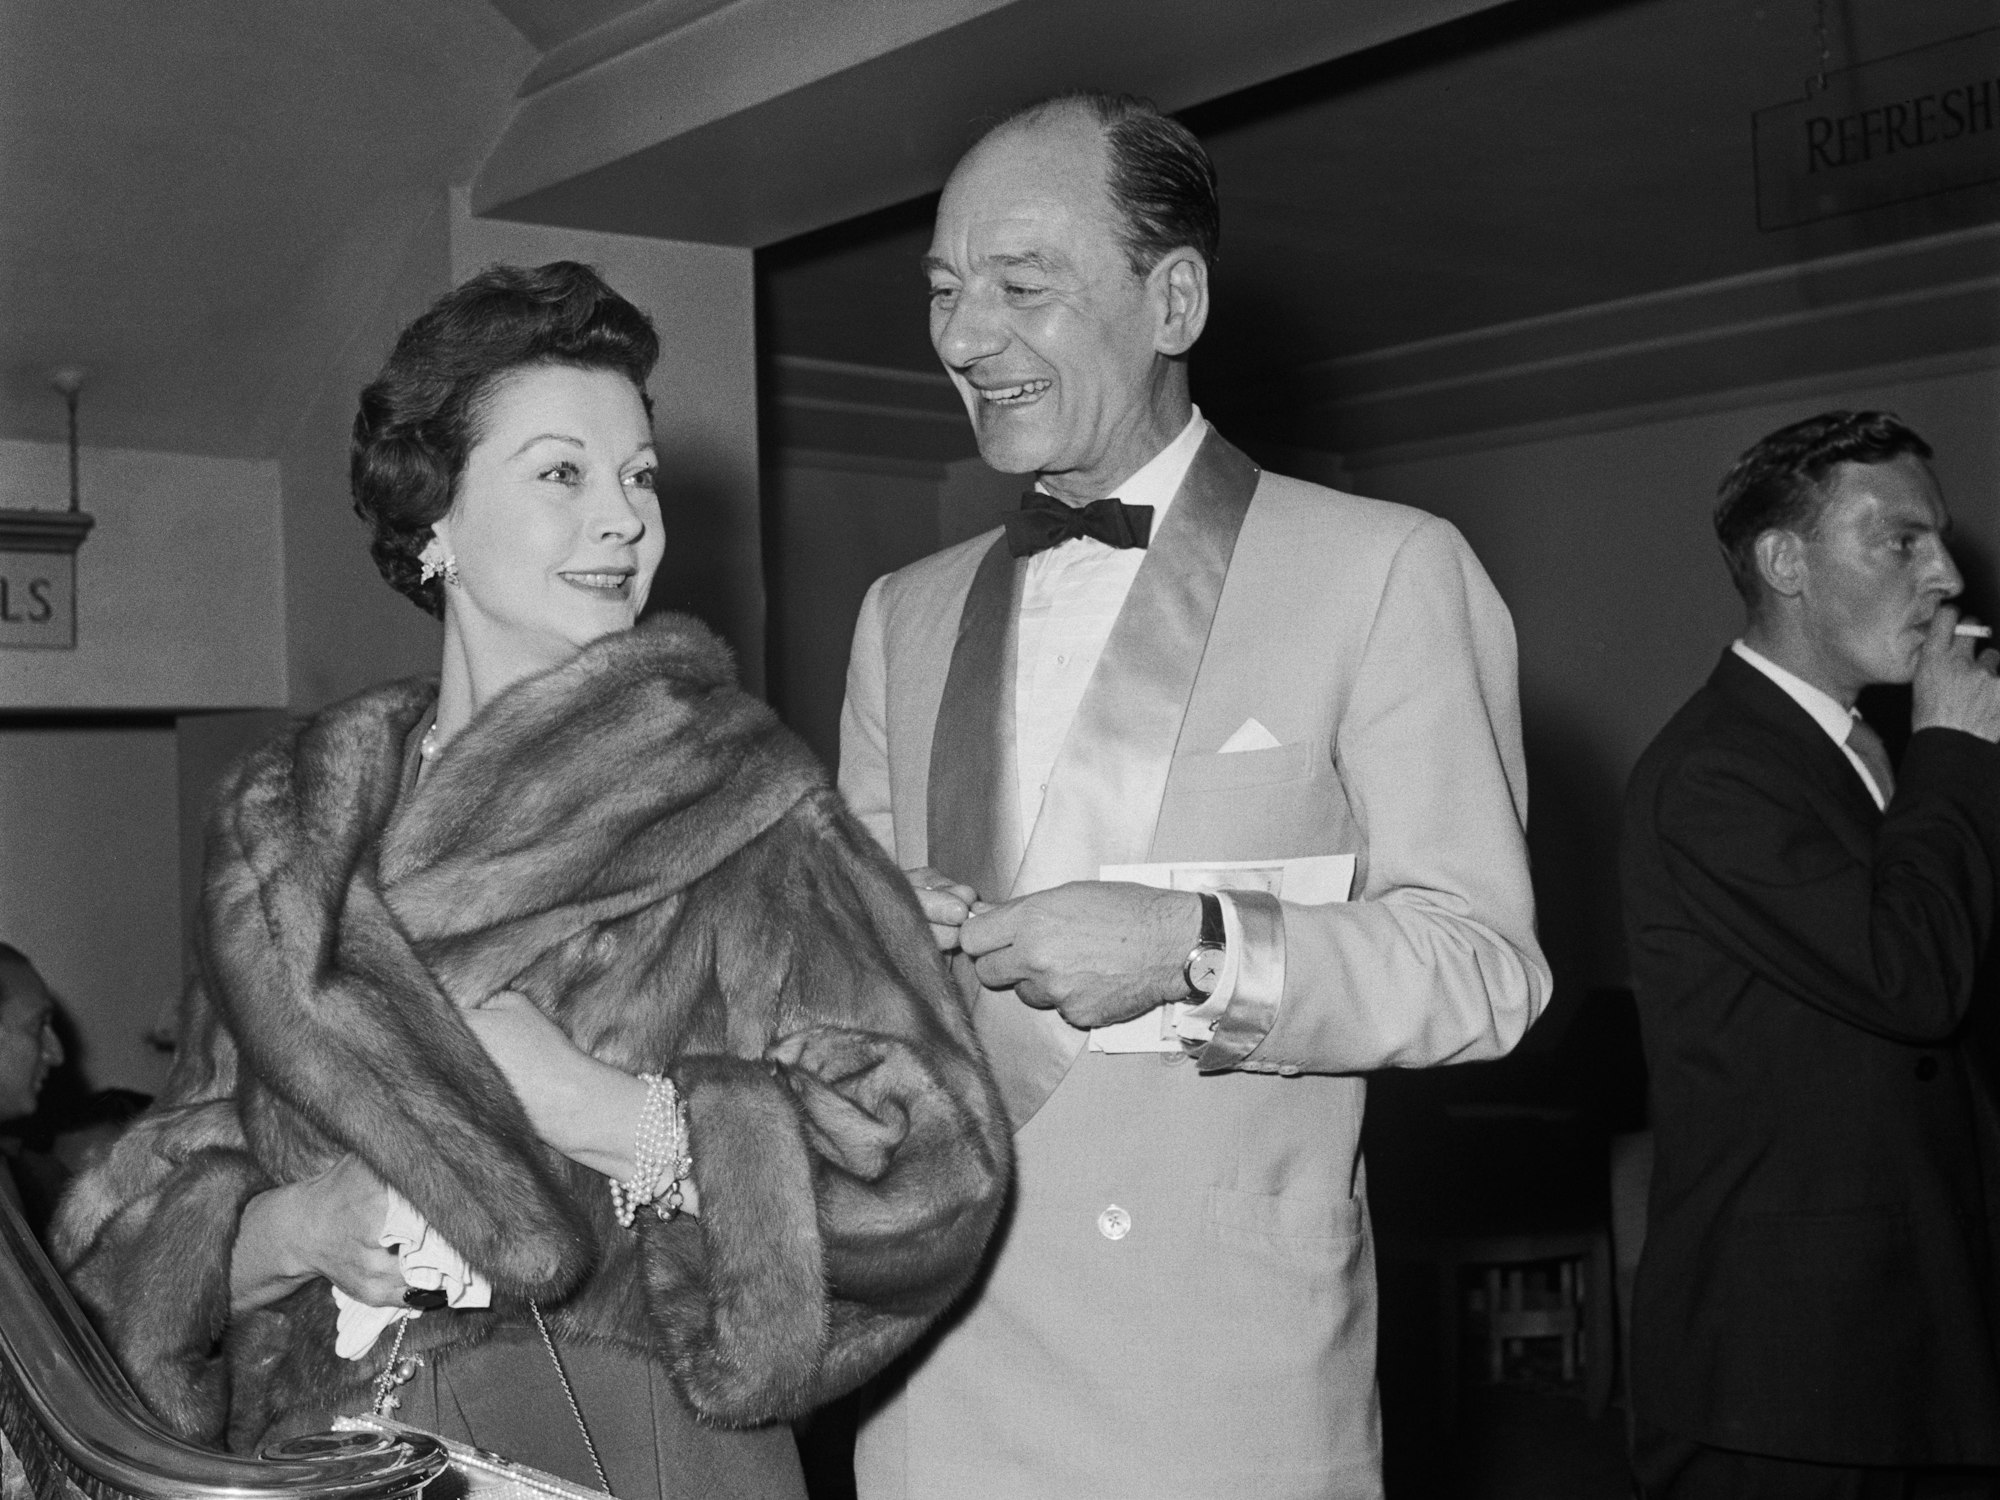 Sir John Gielgud, hier mit seiner Kollegin Vivien Leigh